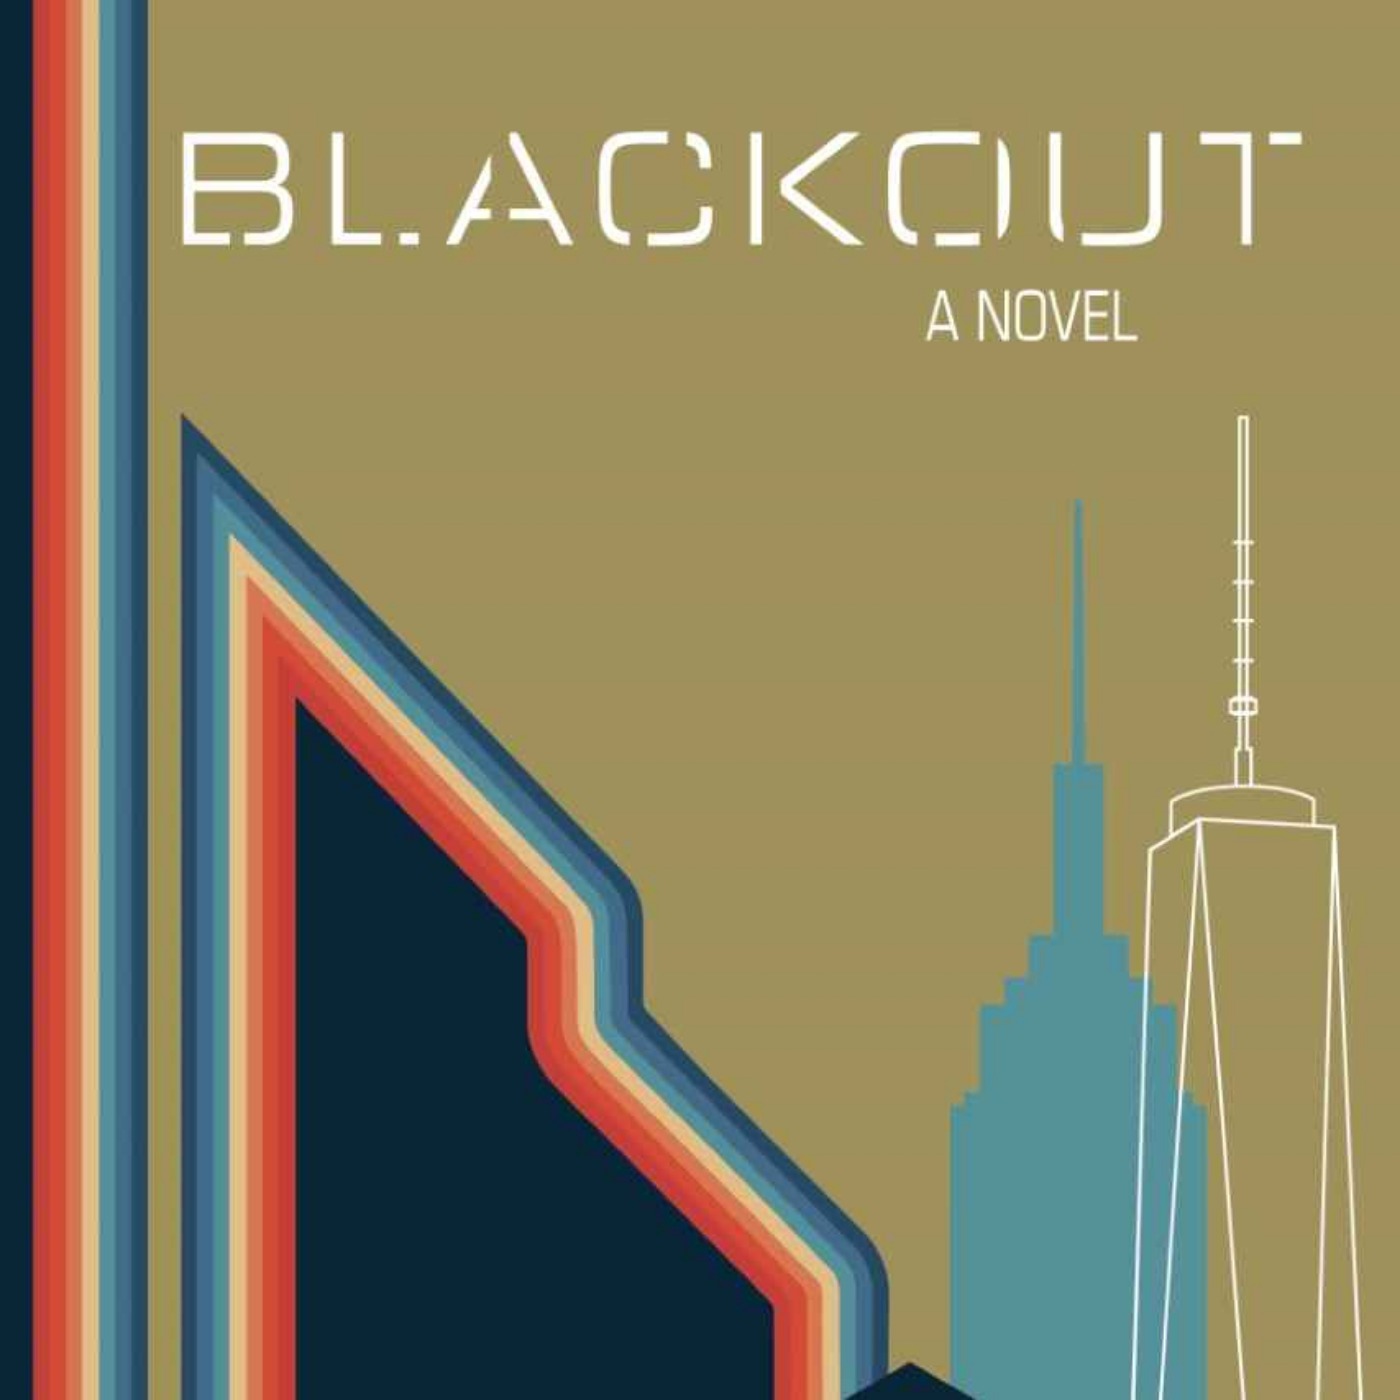 Blackout by Marco Carocari